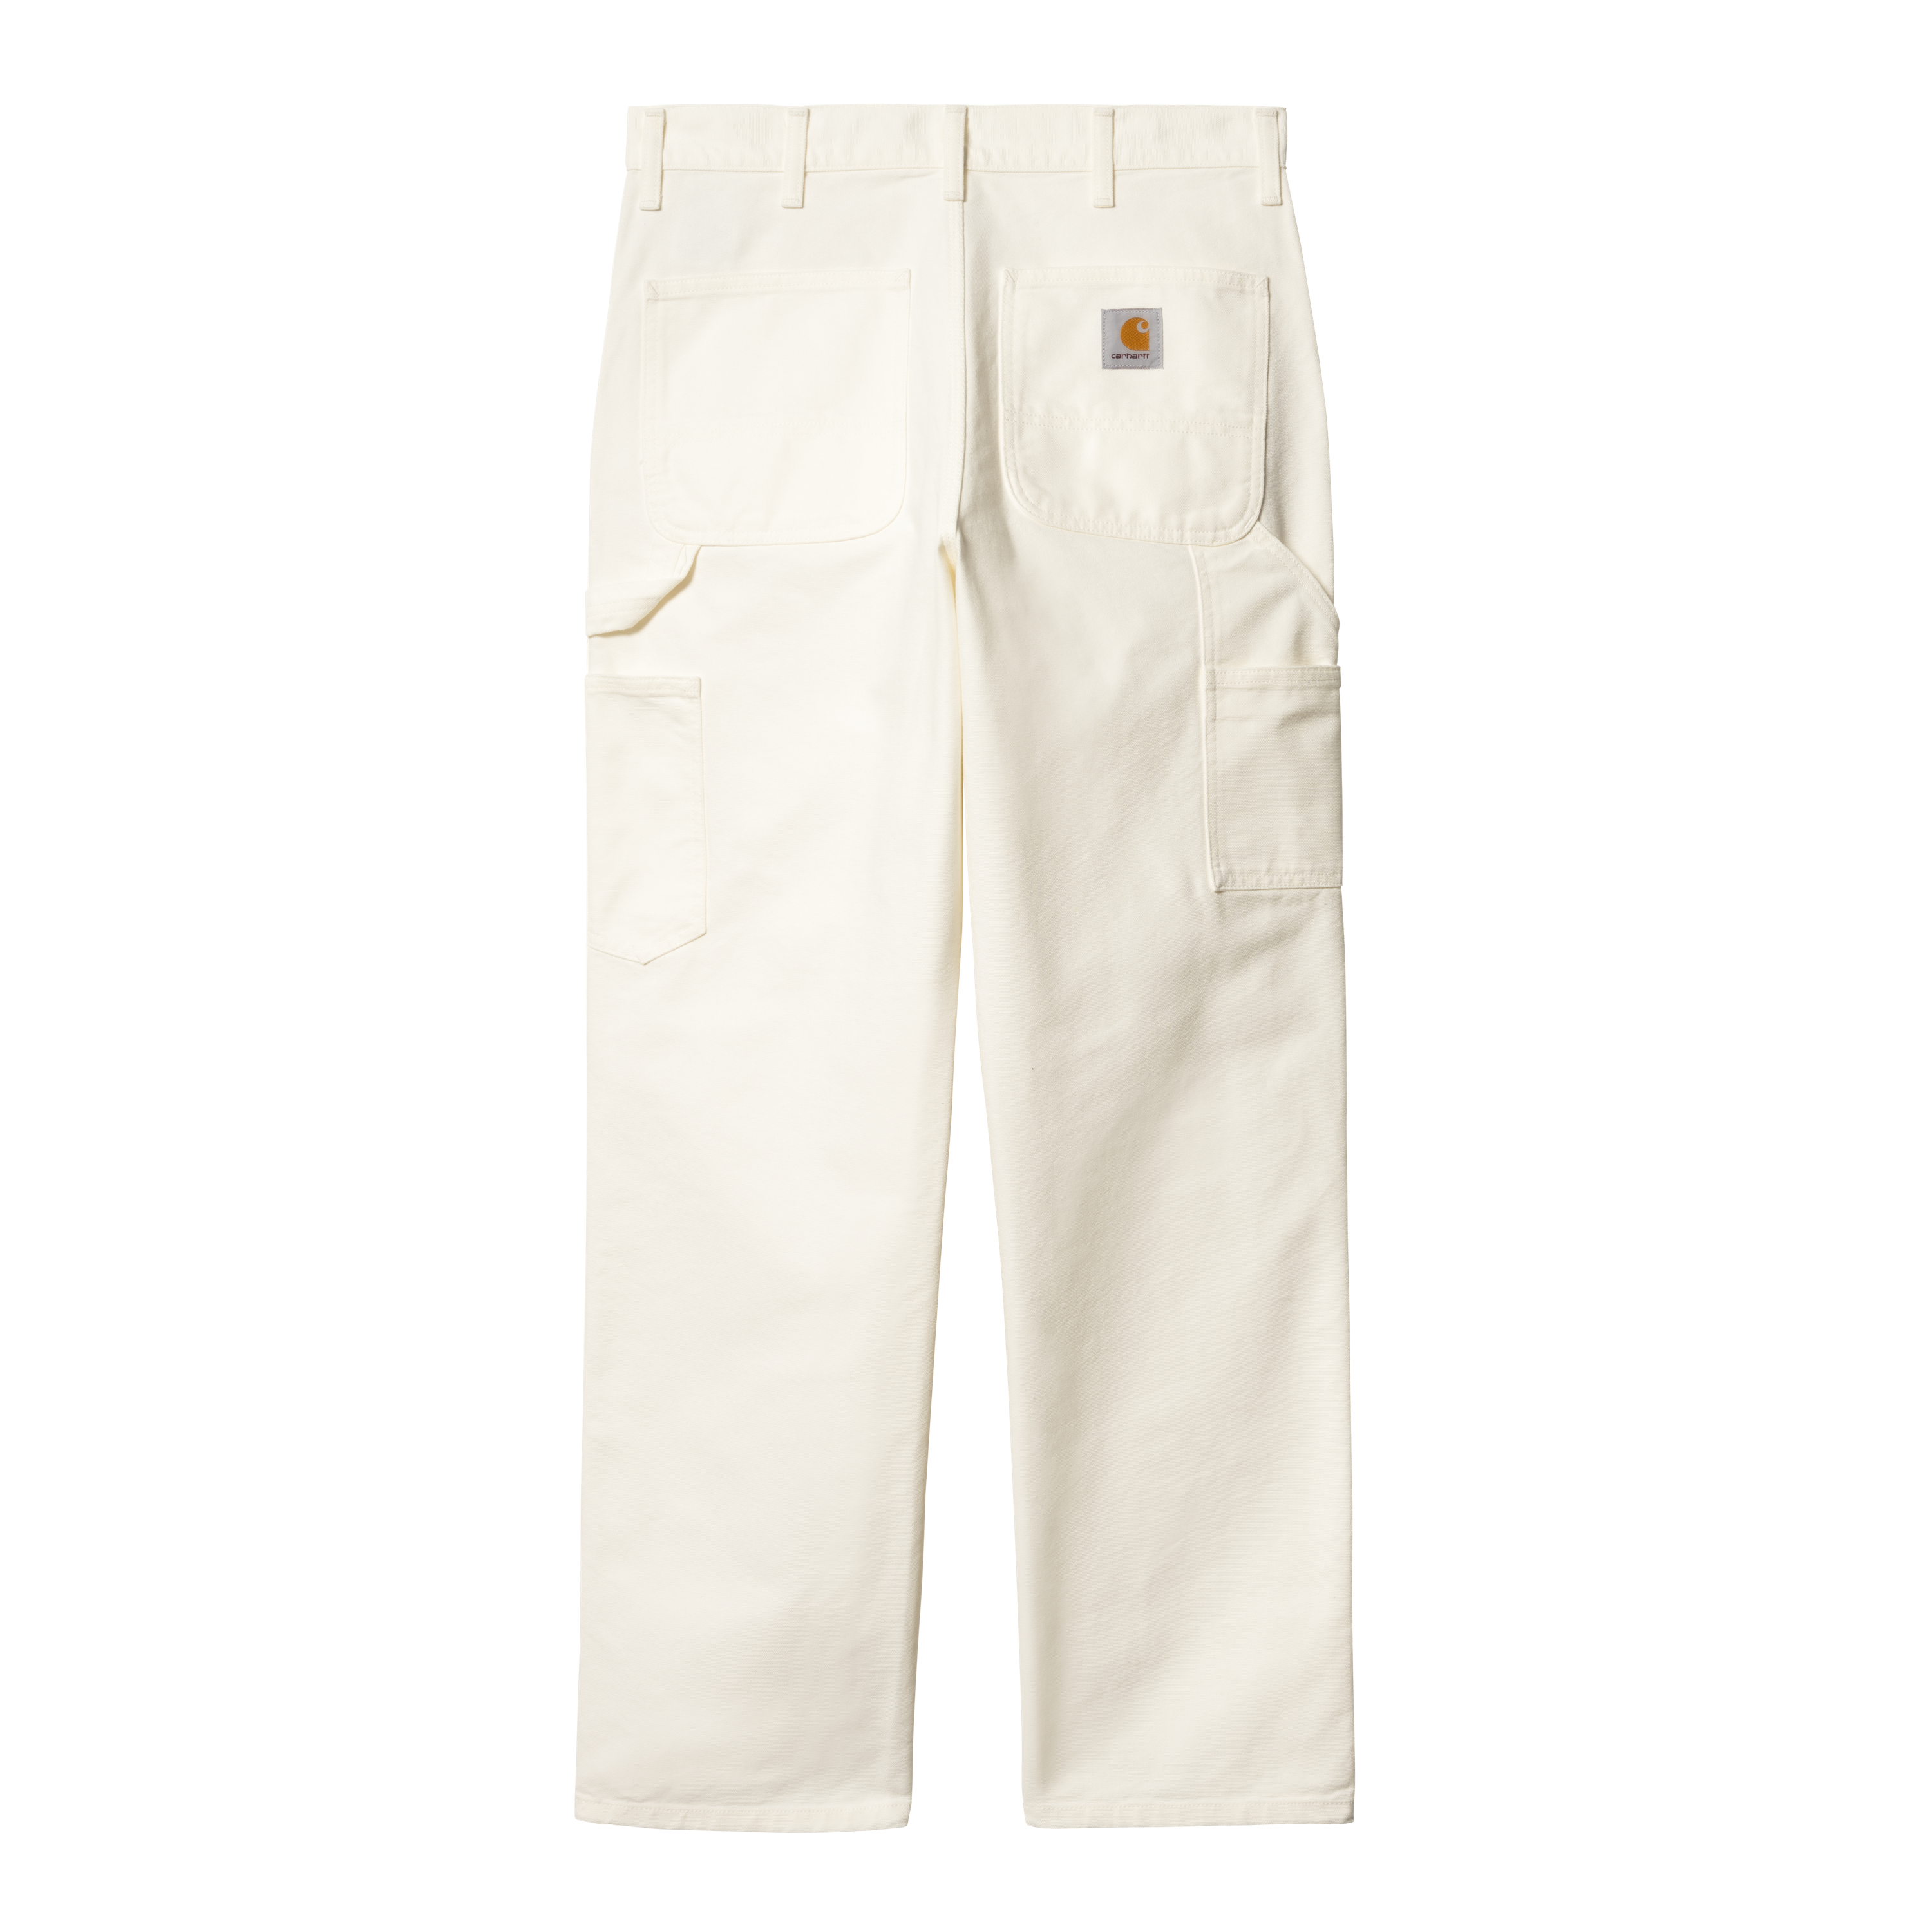 Carhartt WIP Single Knee Pant in White